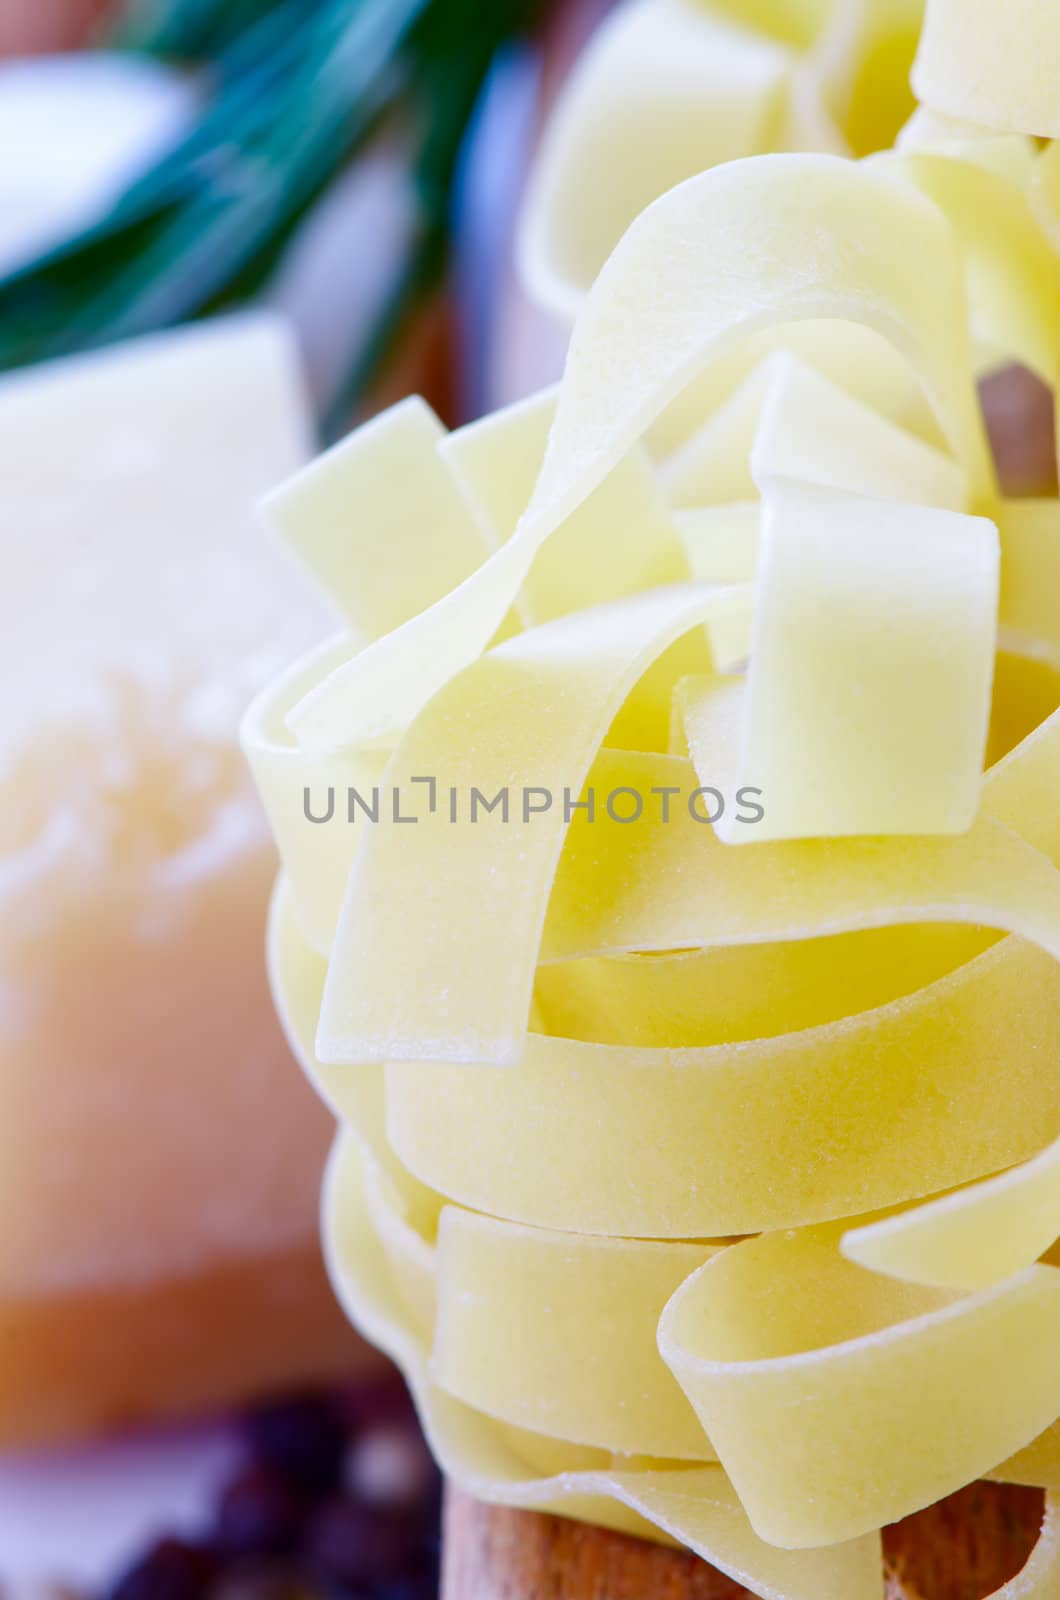 Uncooced pasta parmesan pepper composition close up